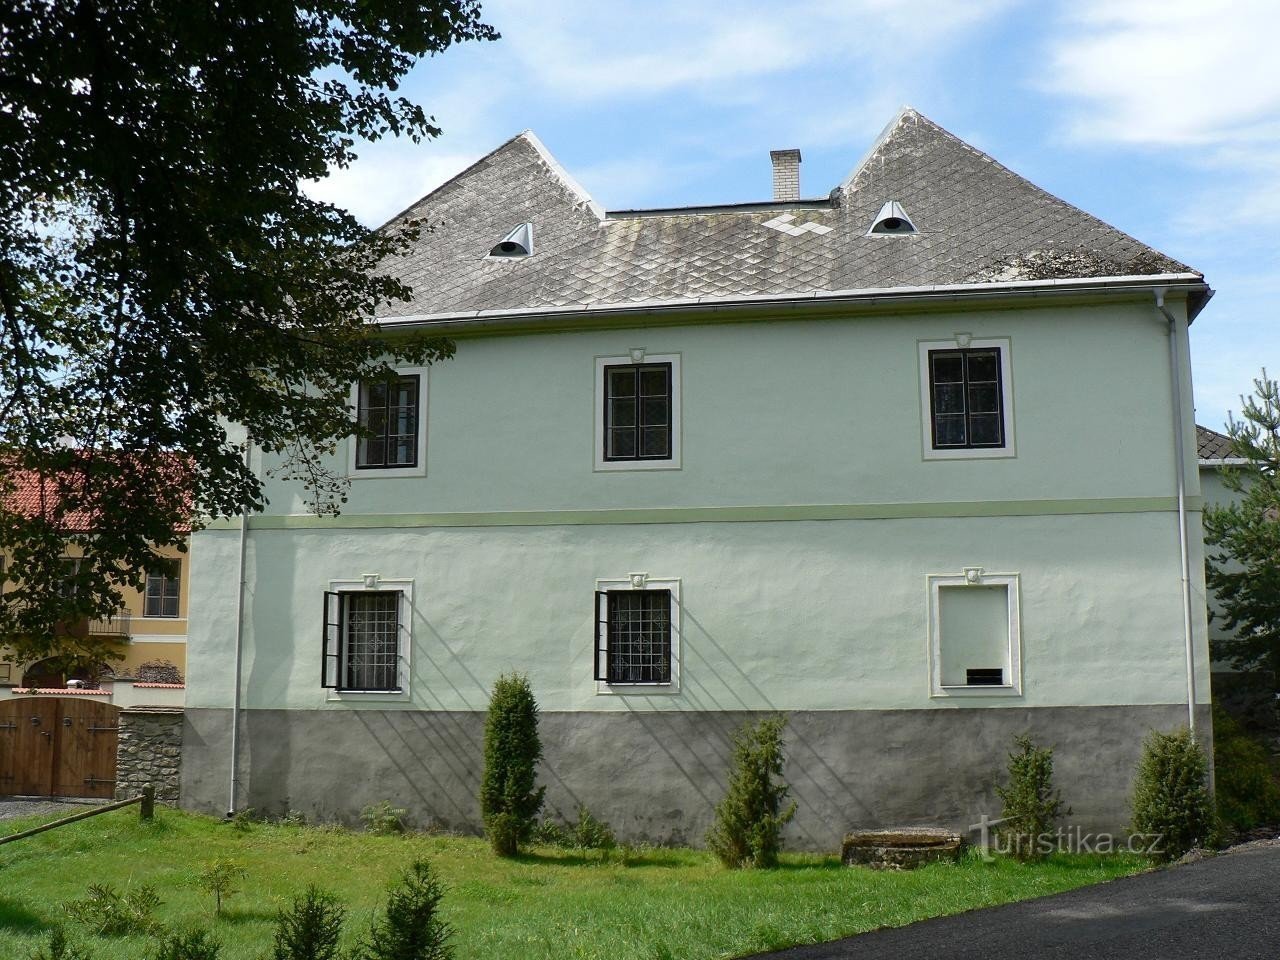 Jindřichovice, old castle